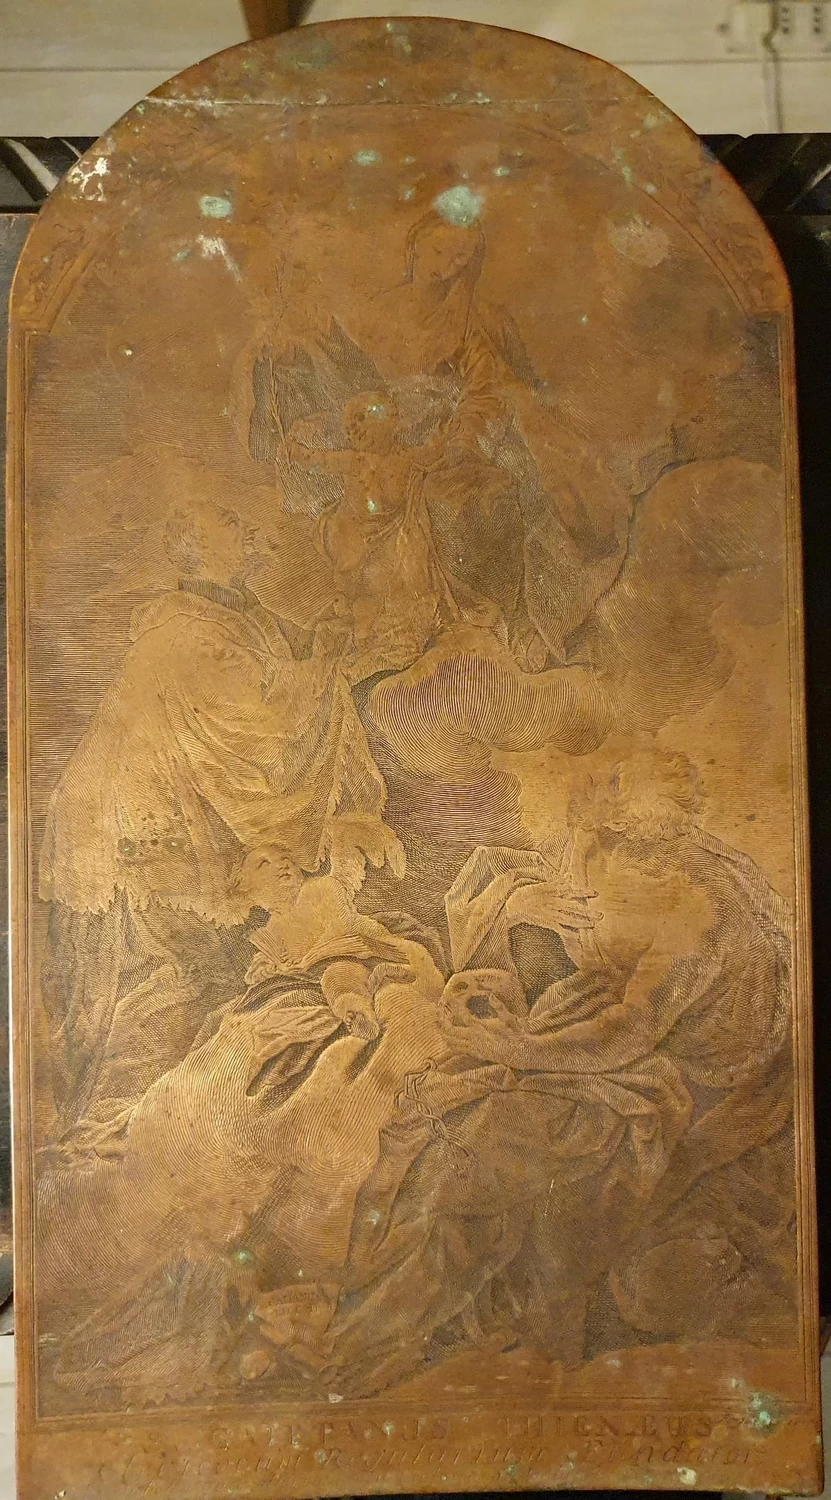  257-Giambattista Pittoni-San Galliano Lechi e San Gaetano-lastra per incisione da Pittonijpg 